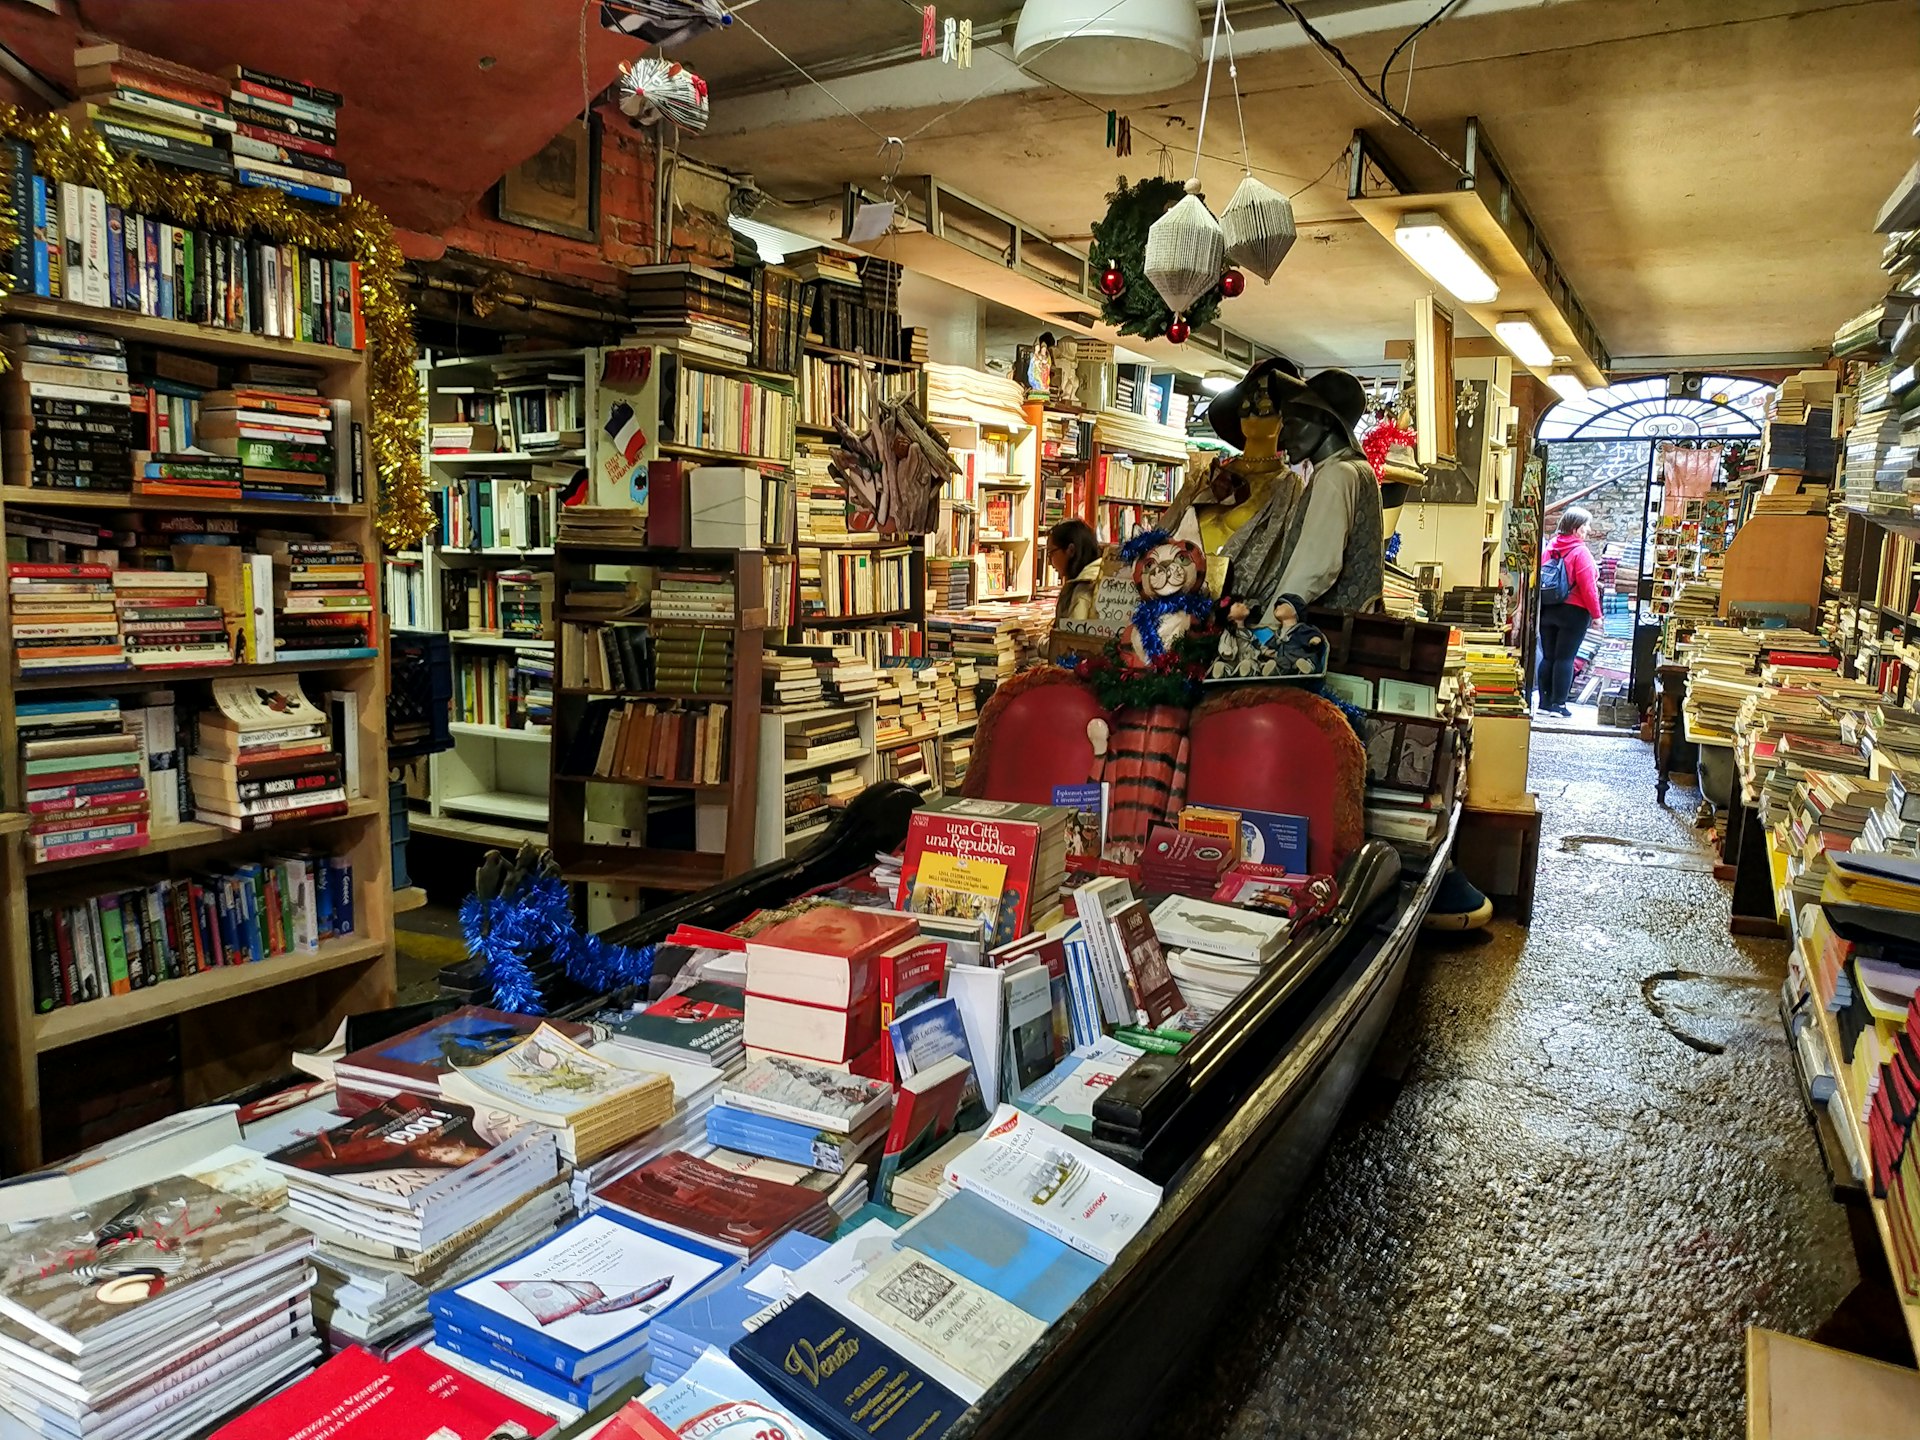 Books stacked in a gondola, in bookshop Acqua Alta, Venice, Italy